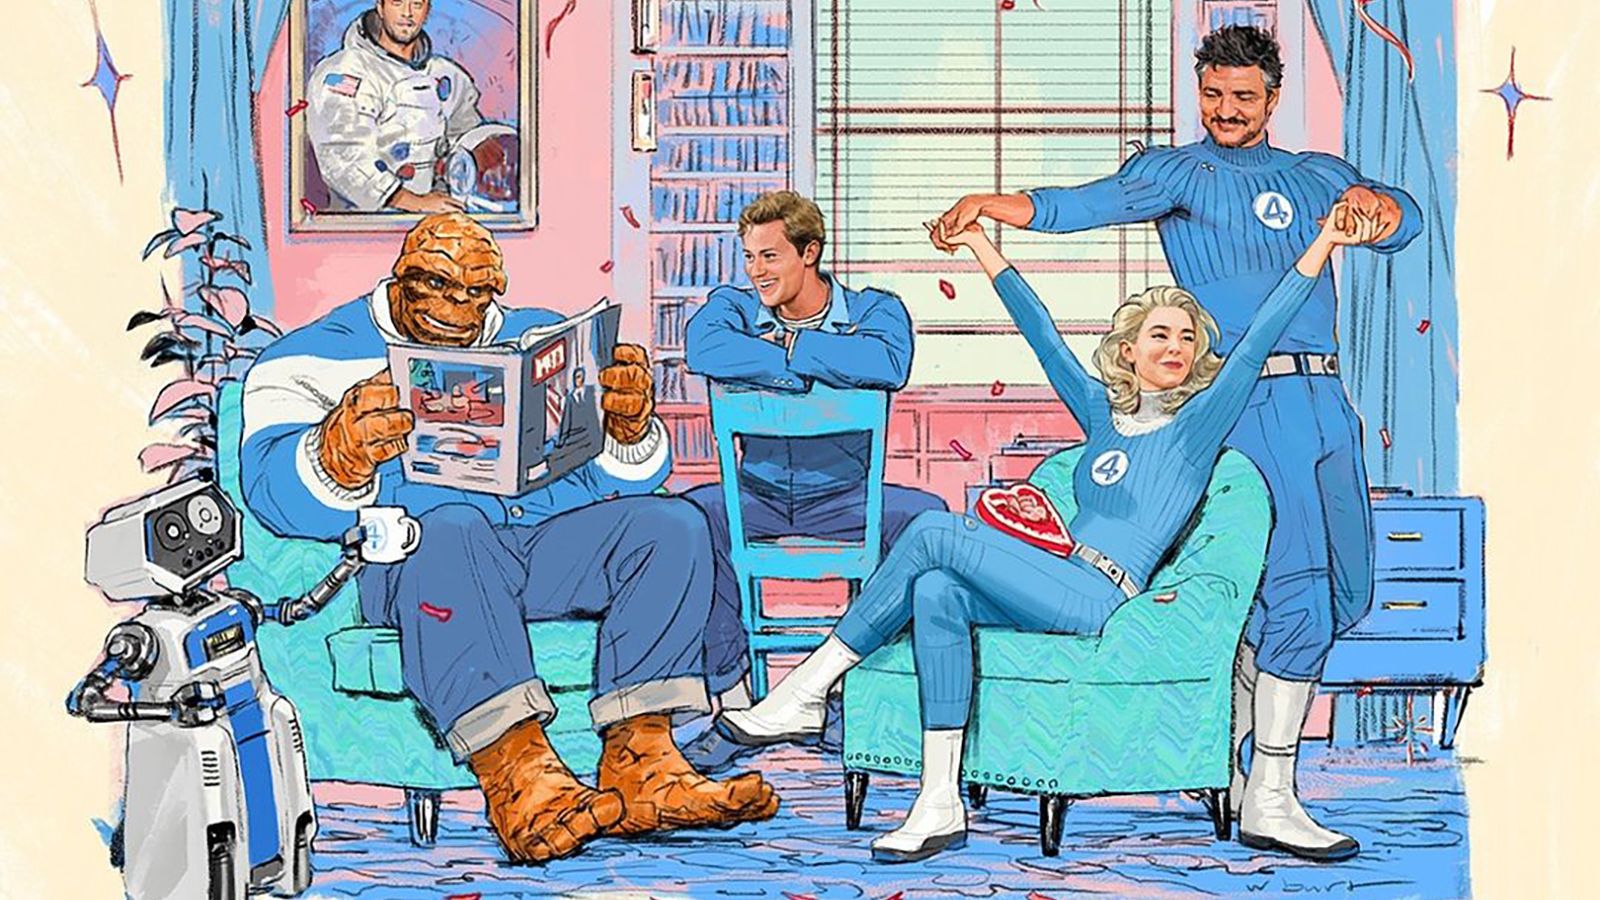 Marvel announces the cast for "Fantastic Four"